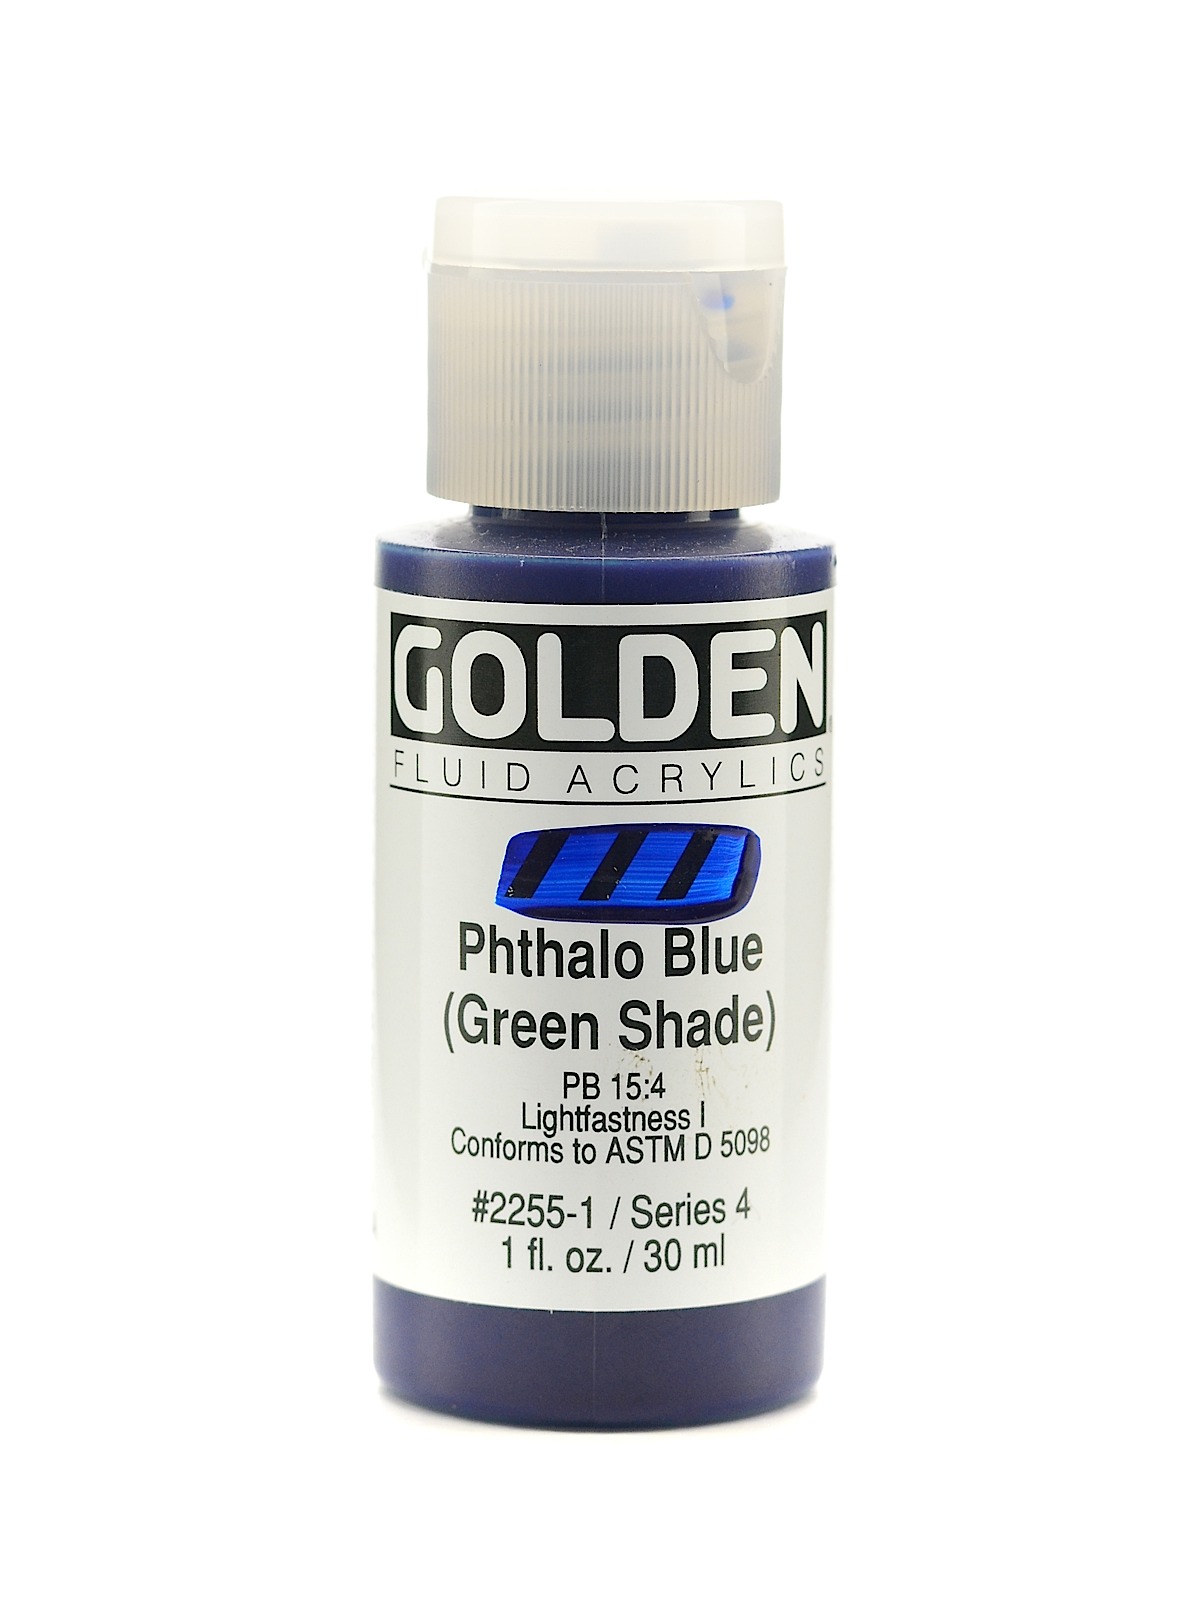 Fluid Acrylics phthalo blue green shade 1 oz.